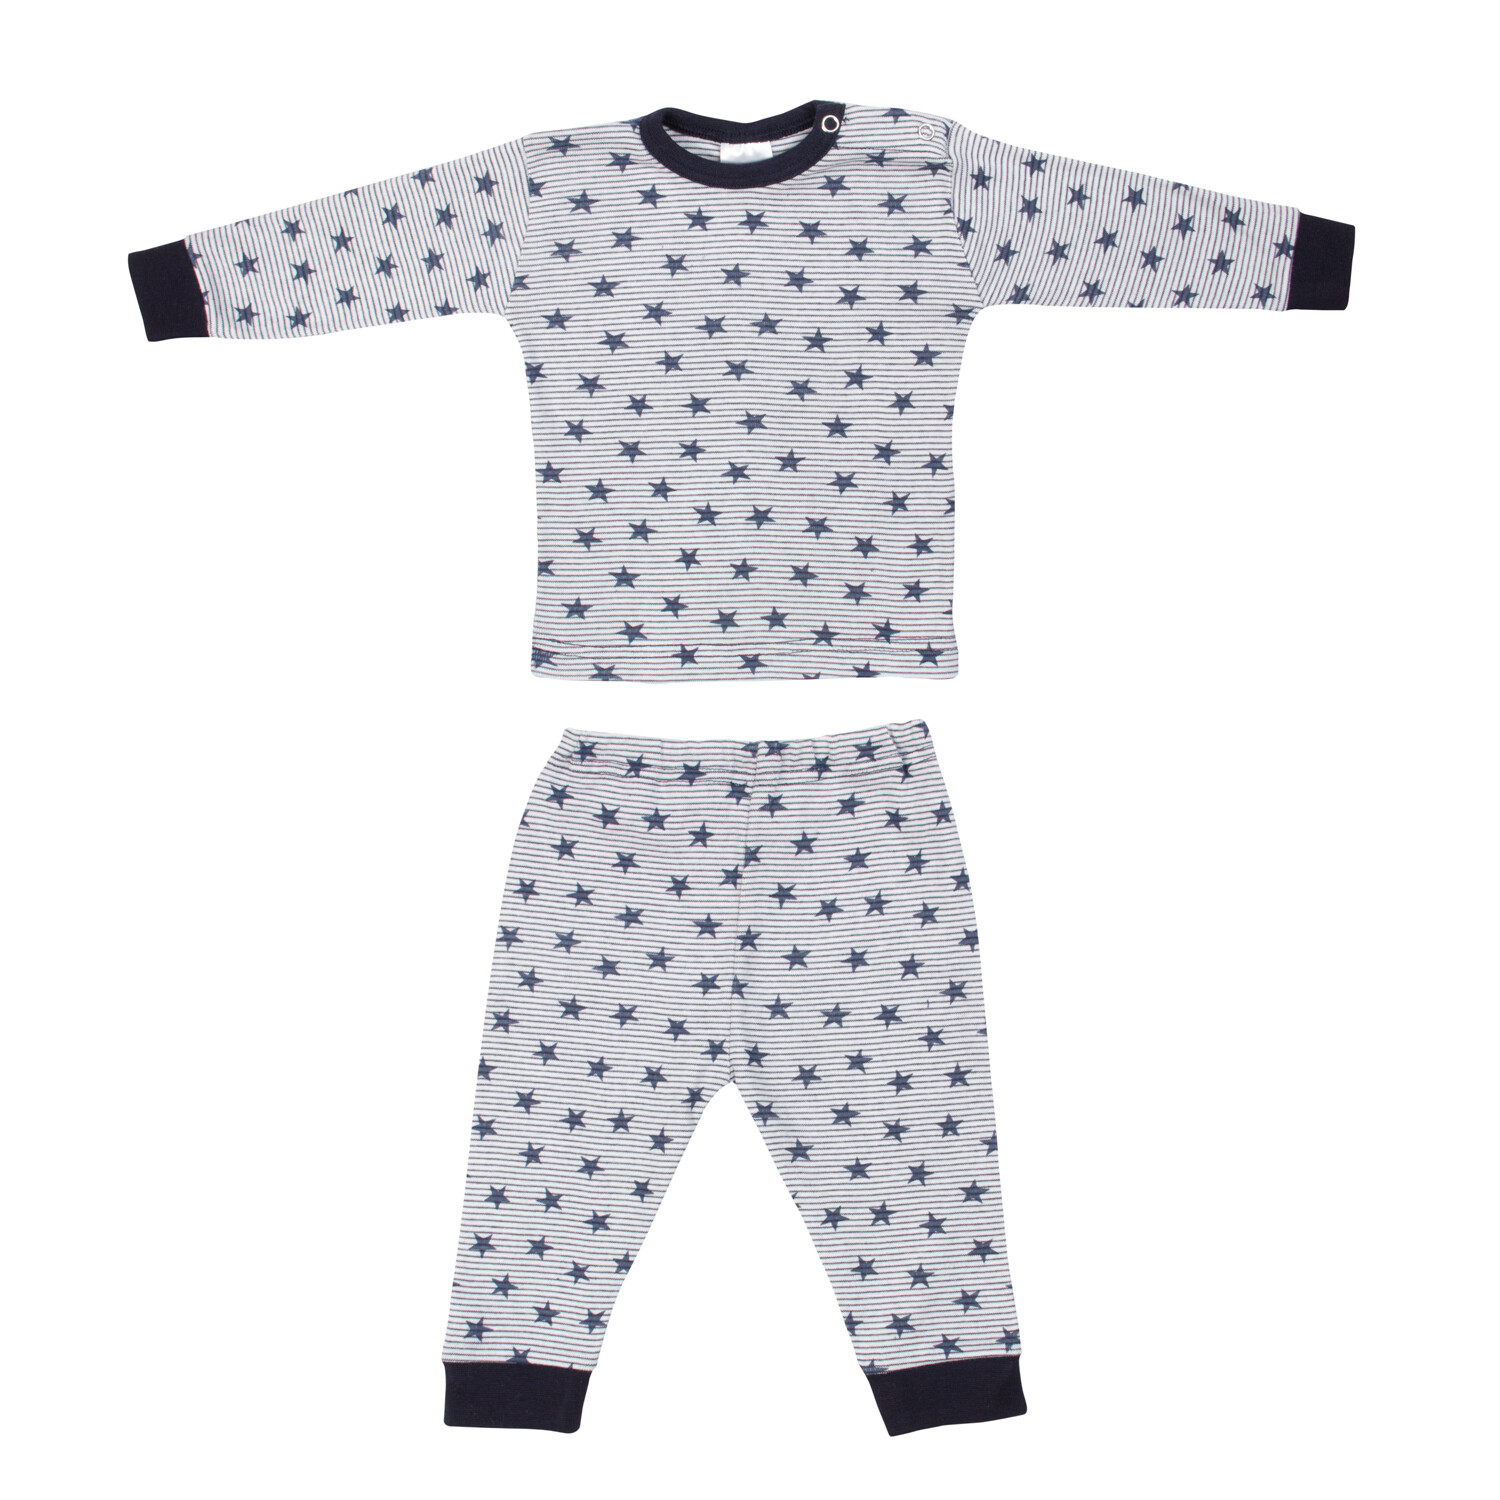 (24-019) Baby pyjama Stripe star marine 62/68